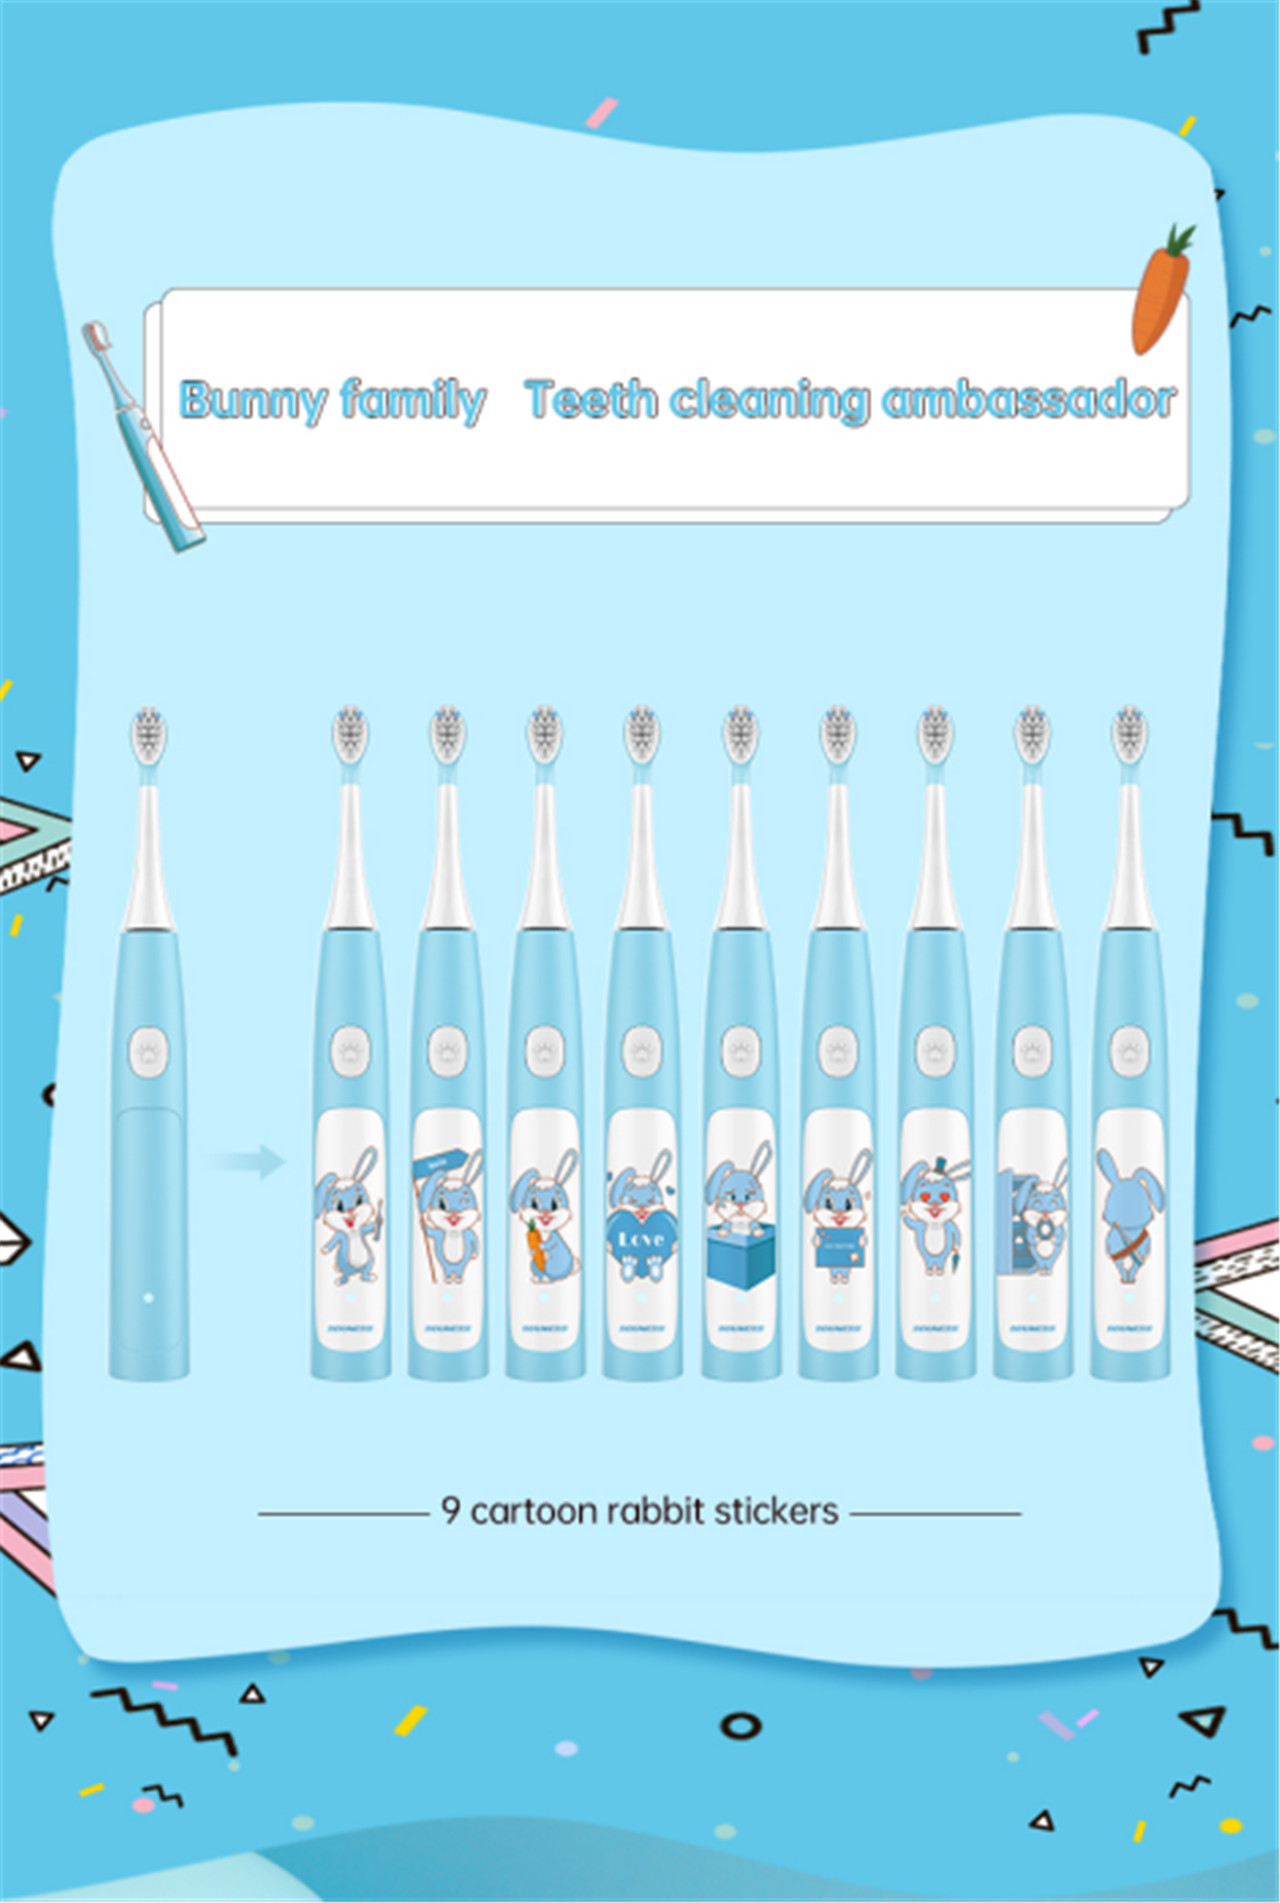 Awọn ọna 3 Electric Toothbrush fun Awọn ọmọde Aifọwọyi Ultrasonic Gbigba agbara IPX7 Waterproof Electric Toothbrush with Cute Cartoon Bunny Sitika-2 (1)